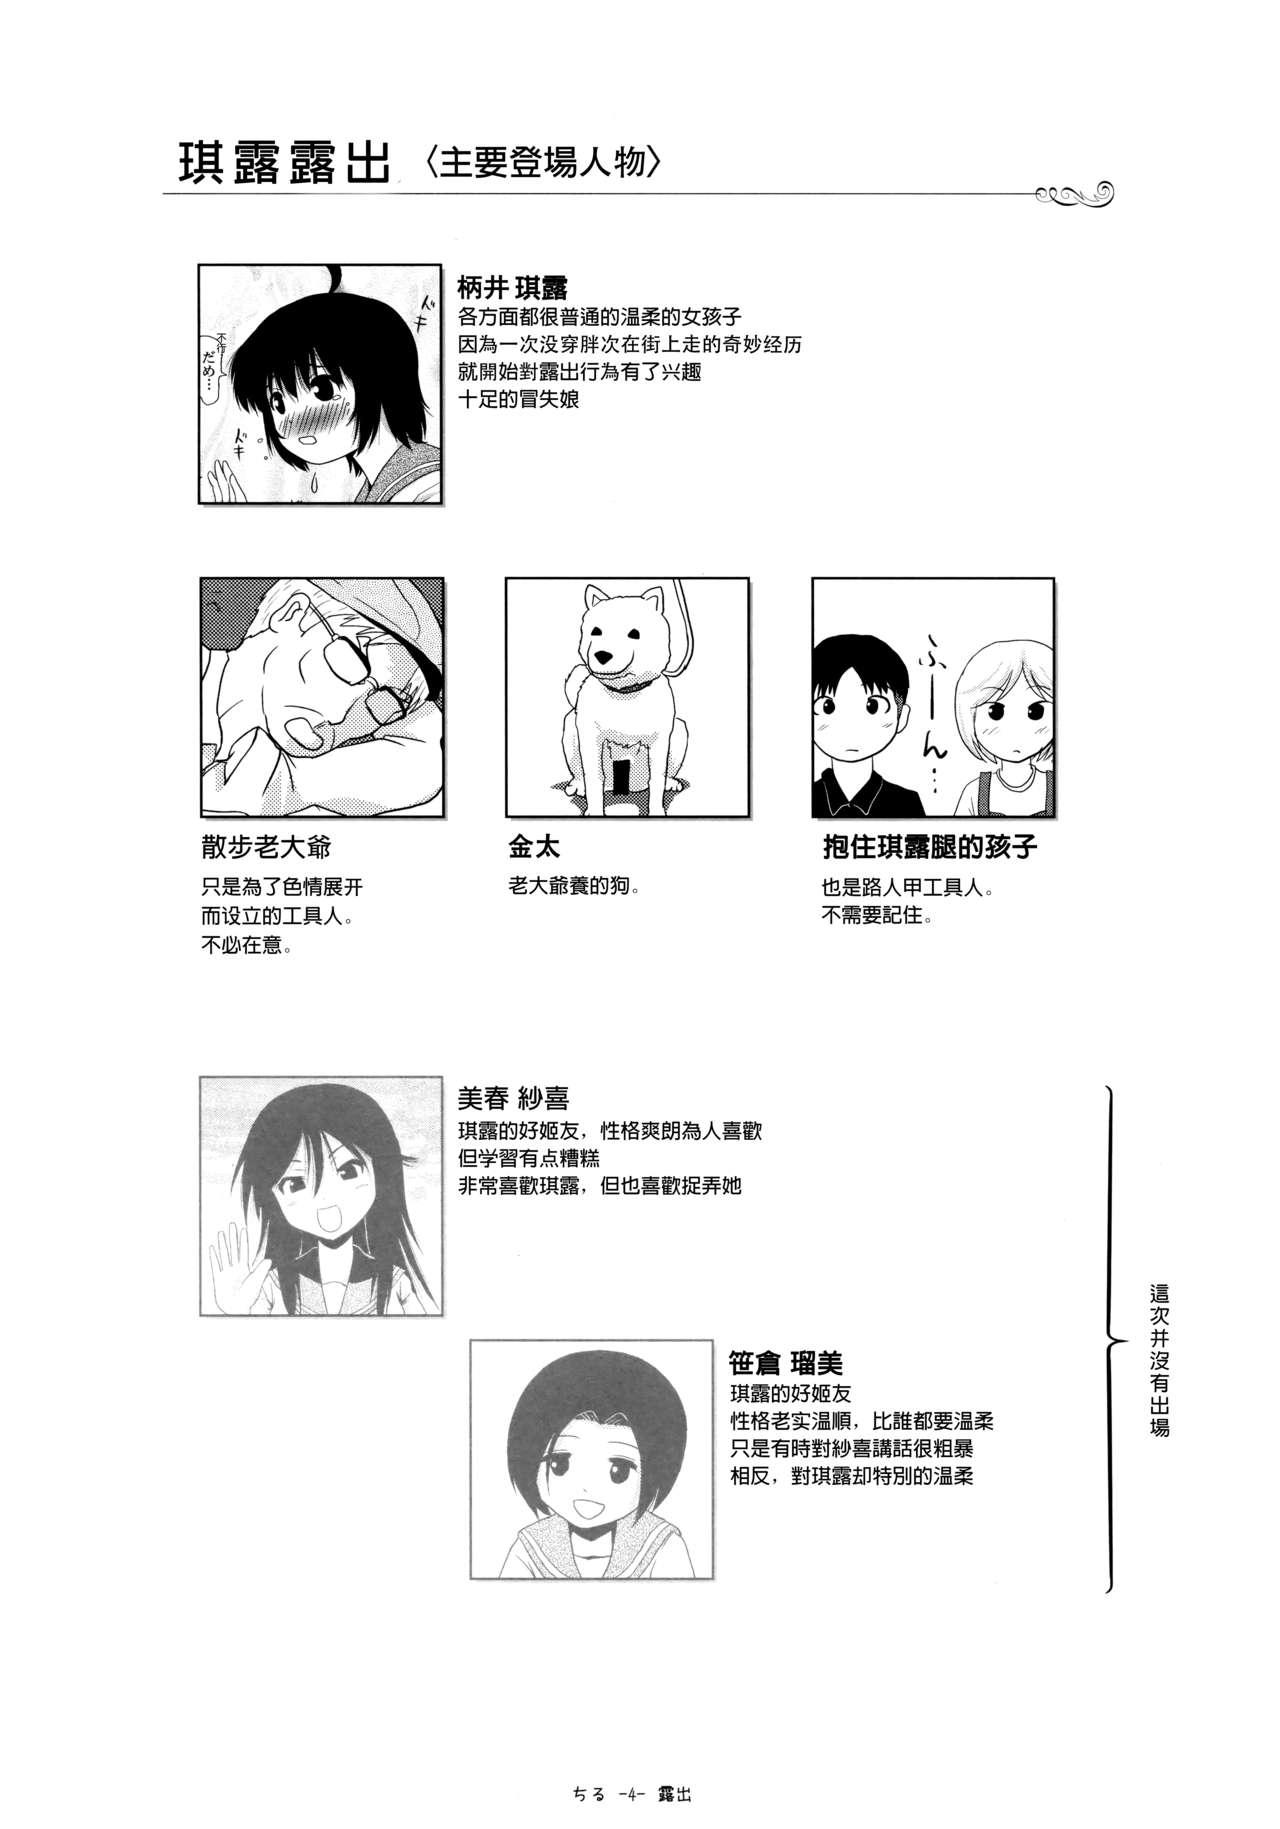 Star Chiru Roshutsu 13 - Original Humiliation Pov - Page 3